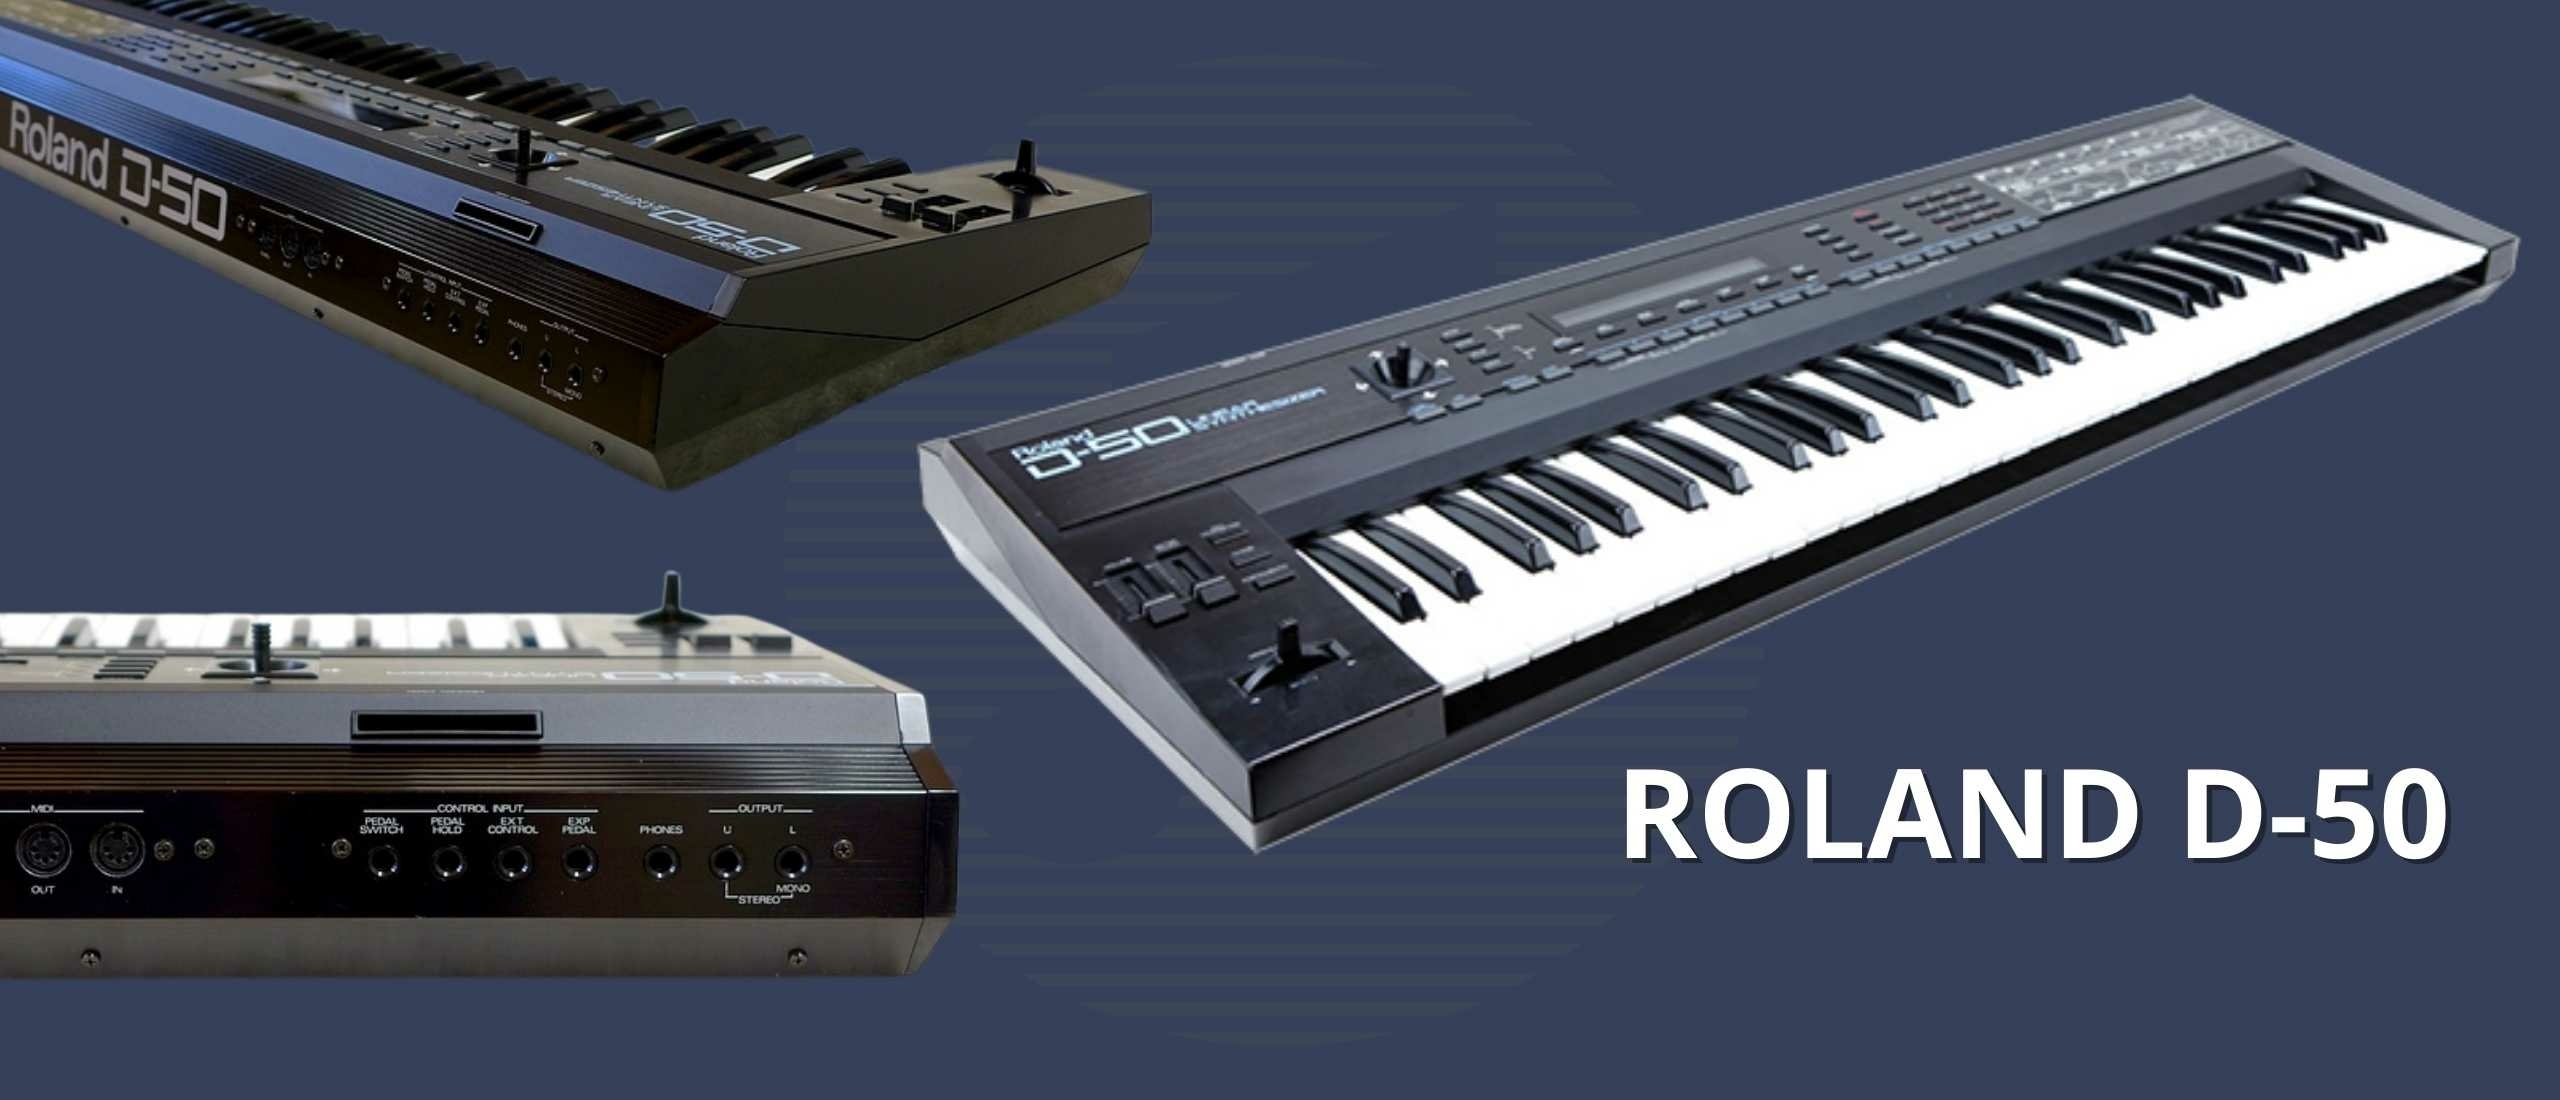 De Roland D-50: Een Tijdloze Klassieker in Digitale Synth's